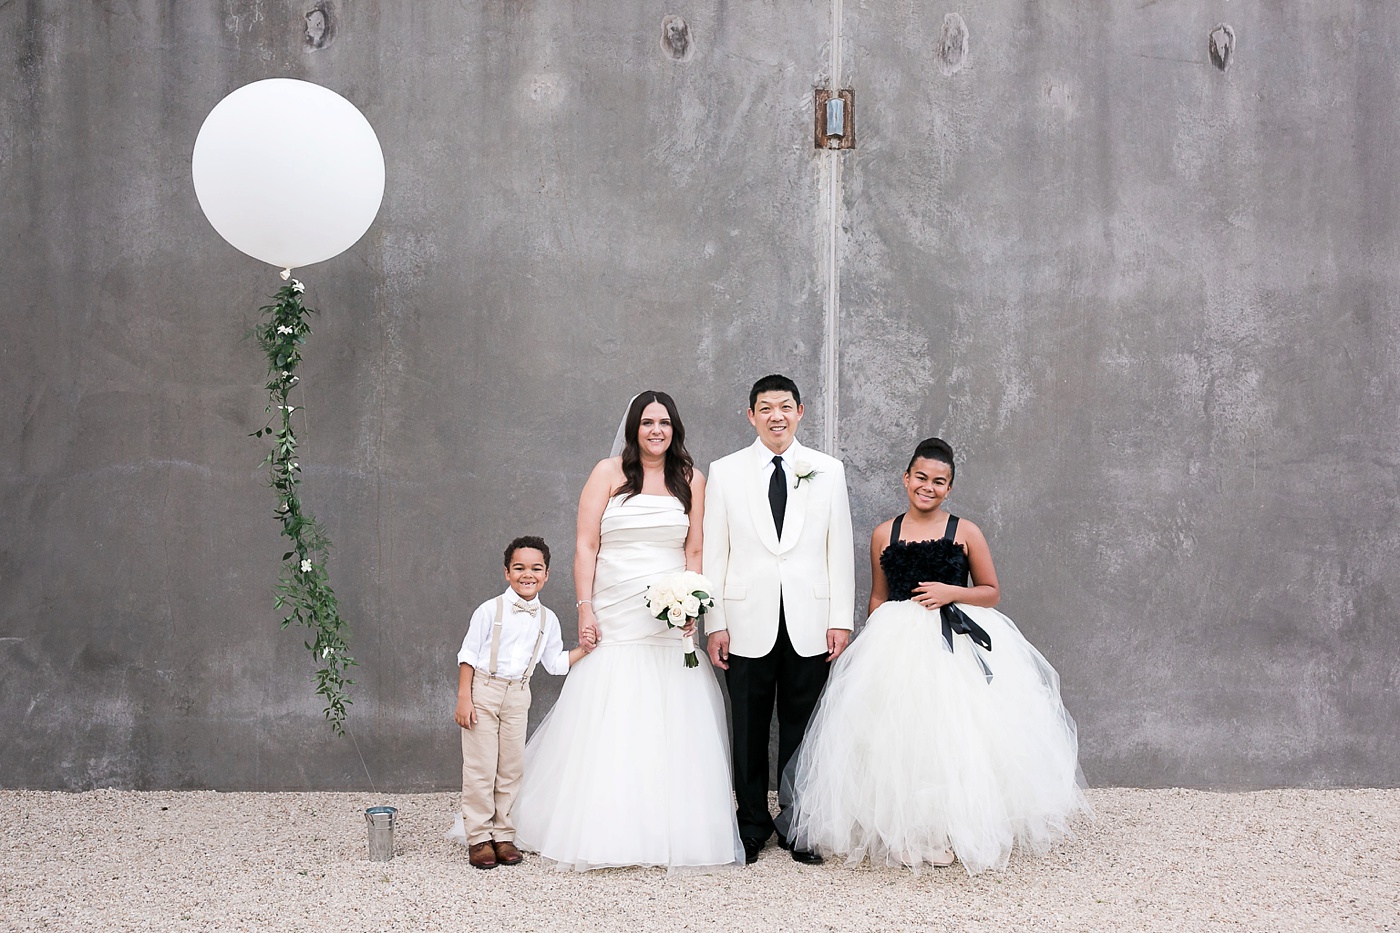 Classy Seattle Wedding with giant white balloon